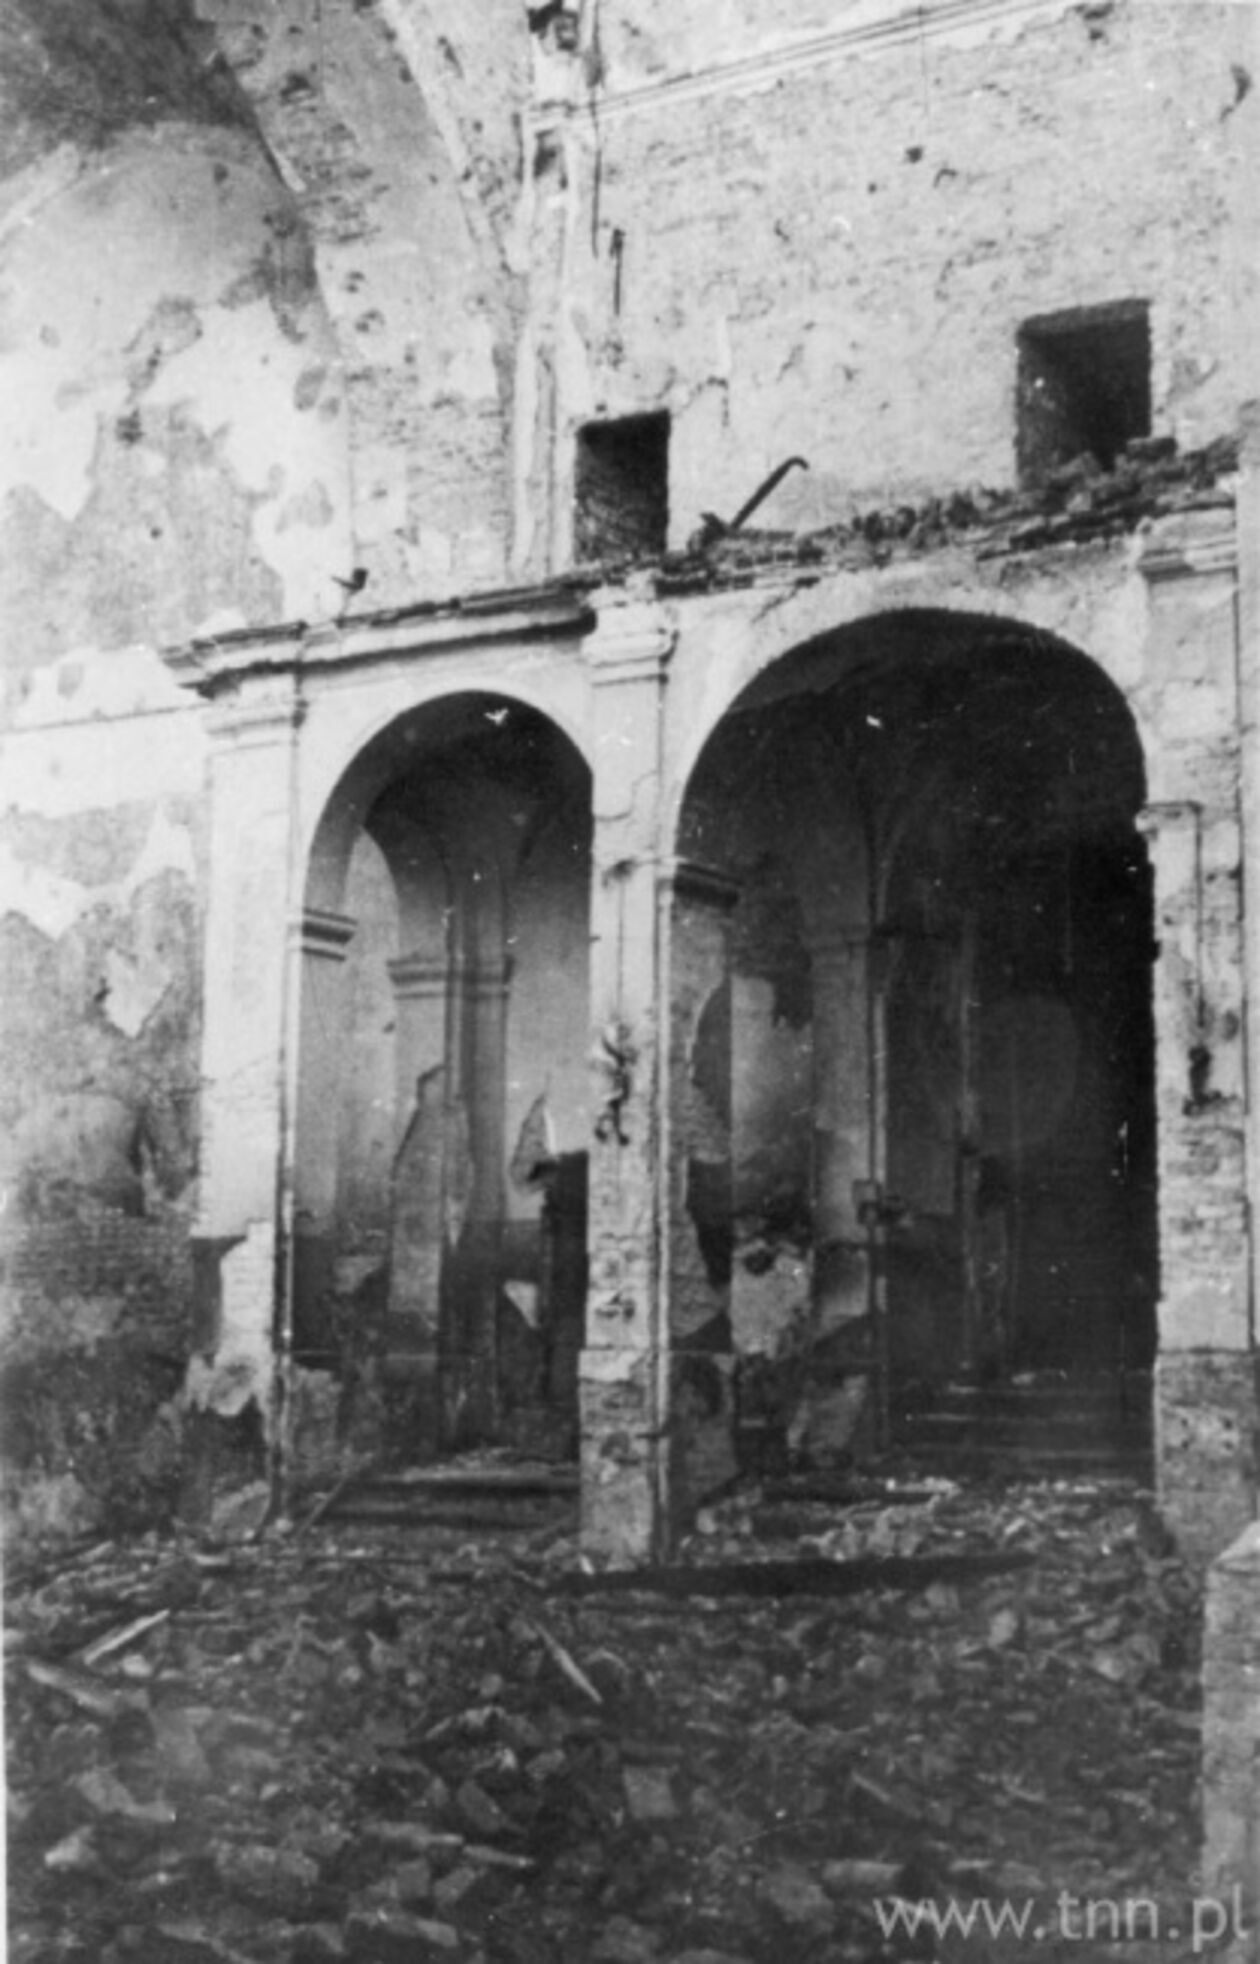  <p>&nbsp;Ruiny wnętrza synagogi Maharszala w Lublinie,1942 rok.</p>